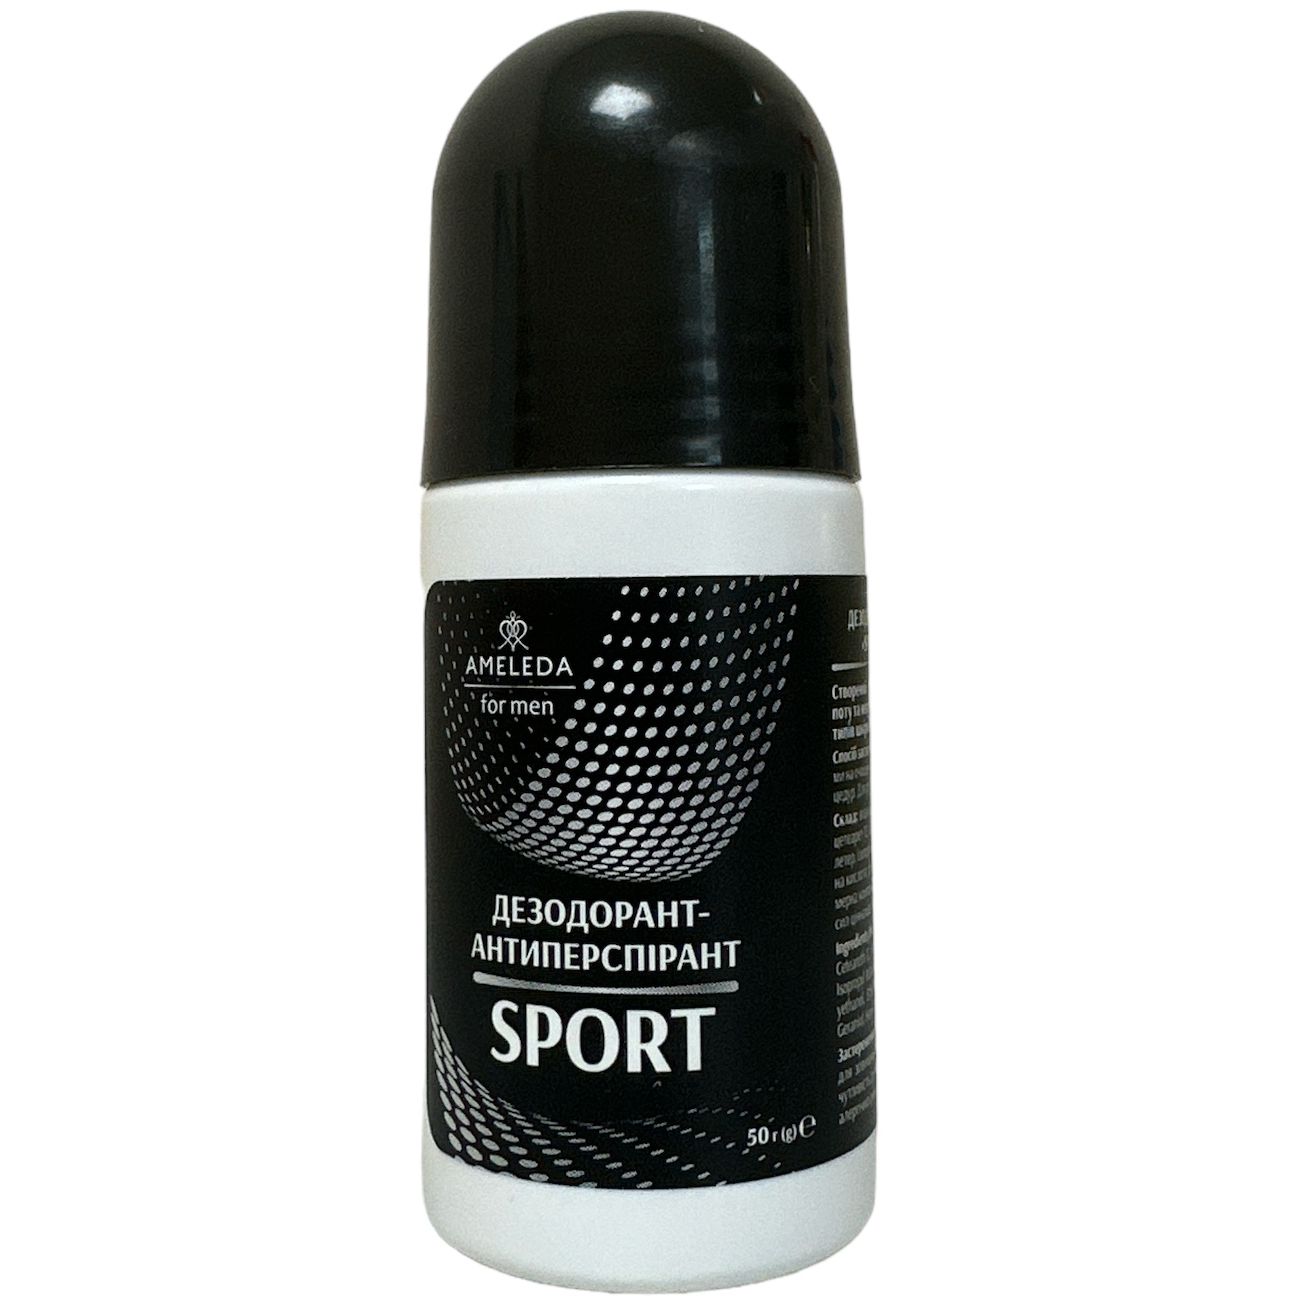 Дезодорант-антиперспирант для мужчин Ameleda Sport 50 г - фото 1